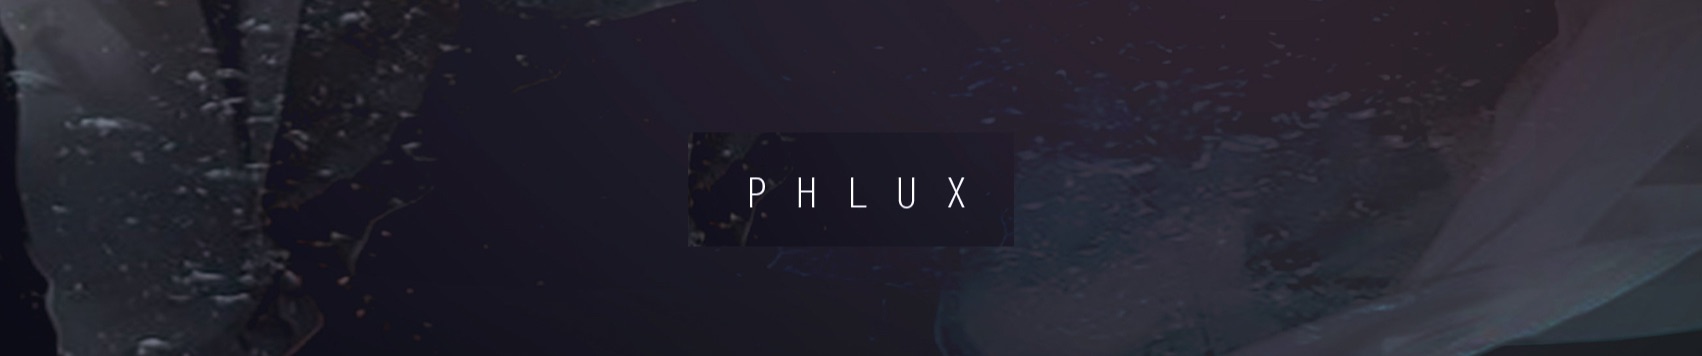 phlux nym